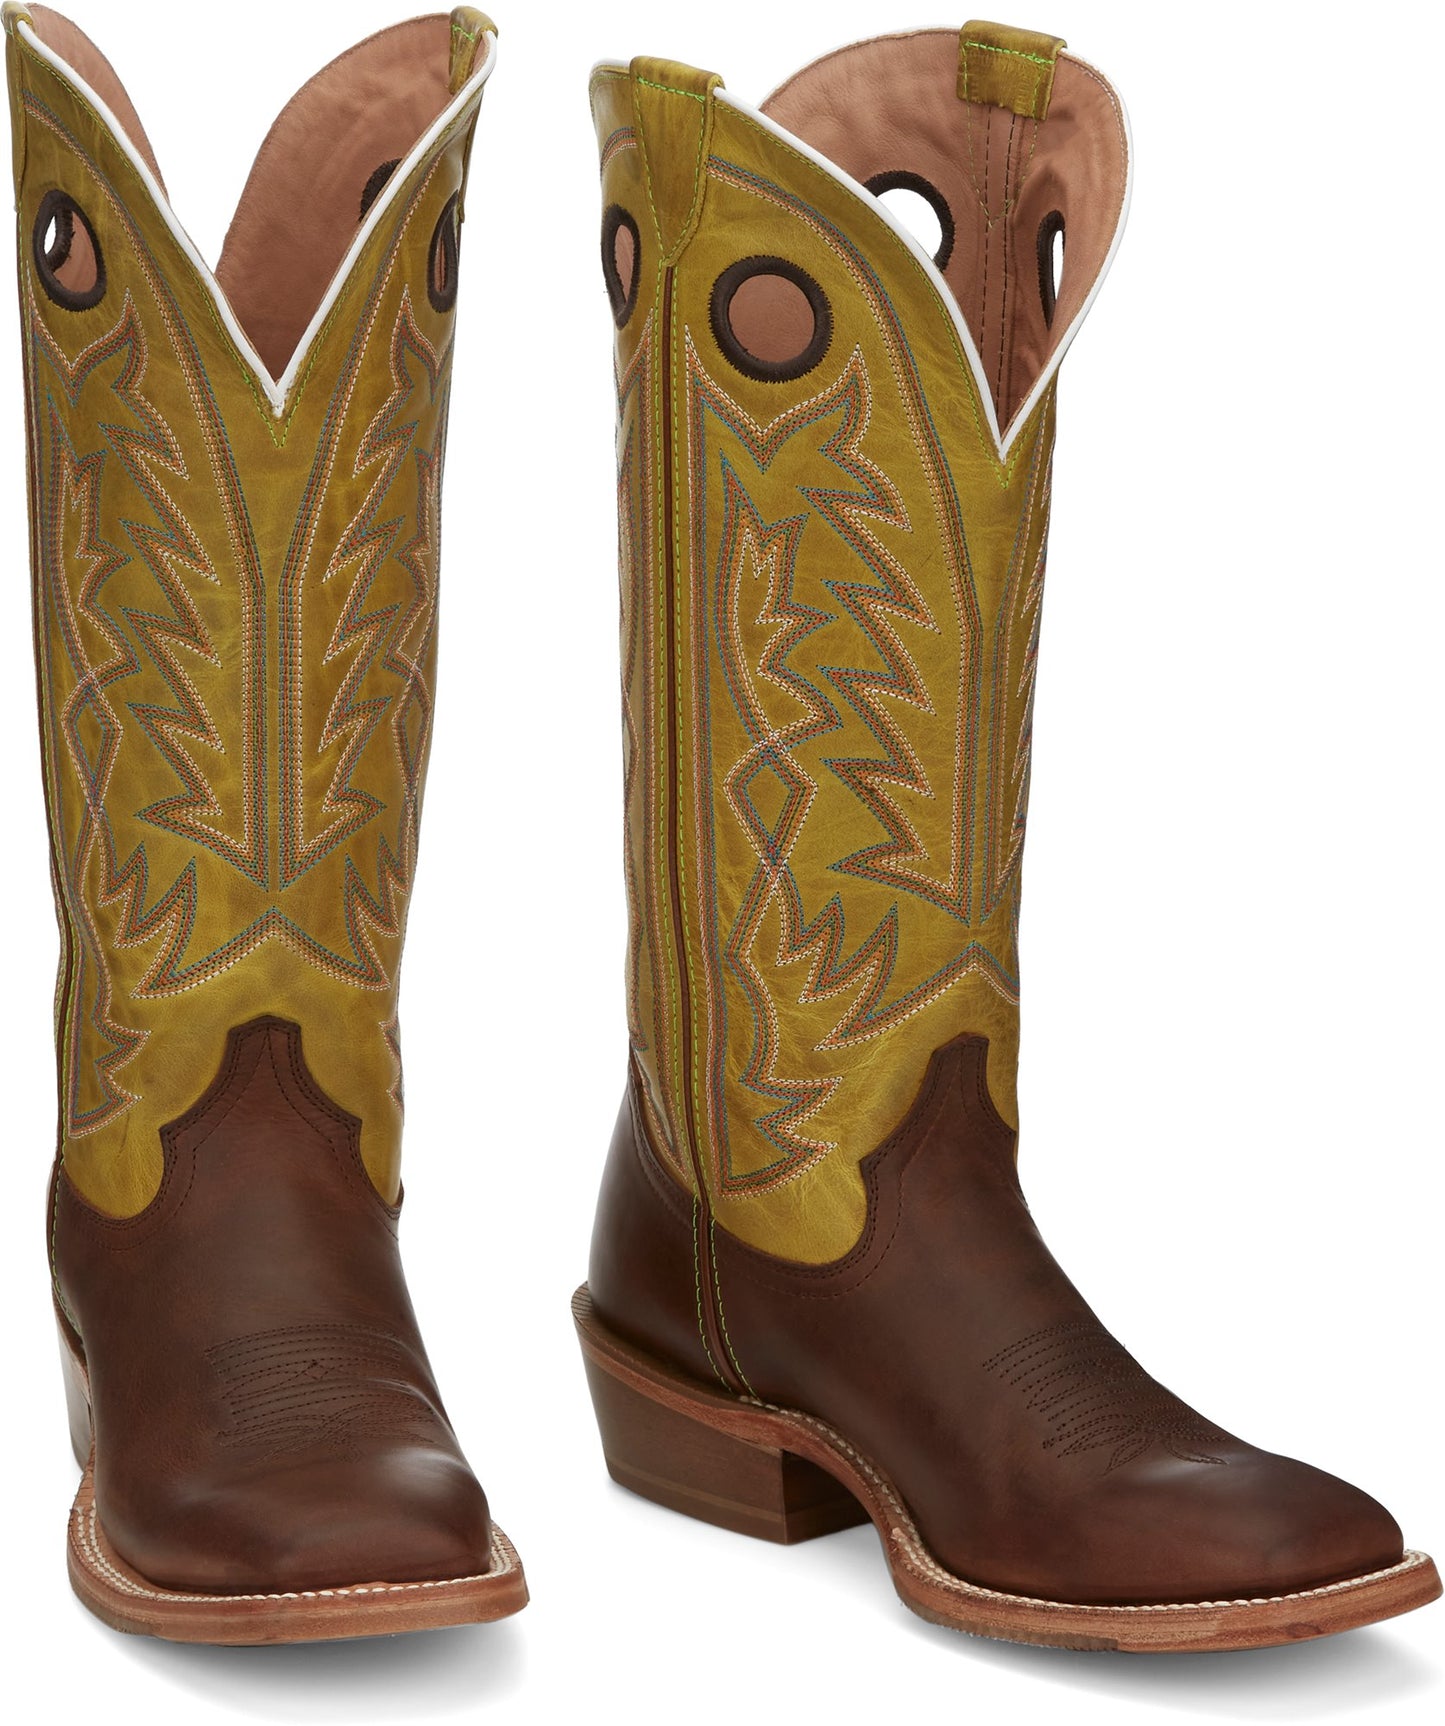 Tony Lama® Men's Fairview Buckaroo Cowboy Boots